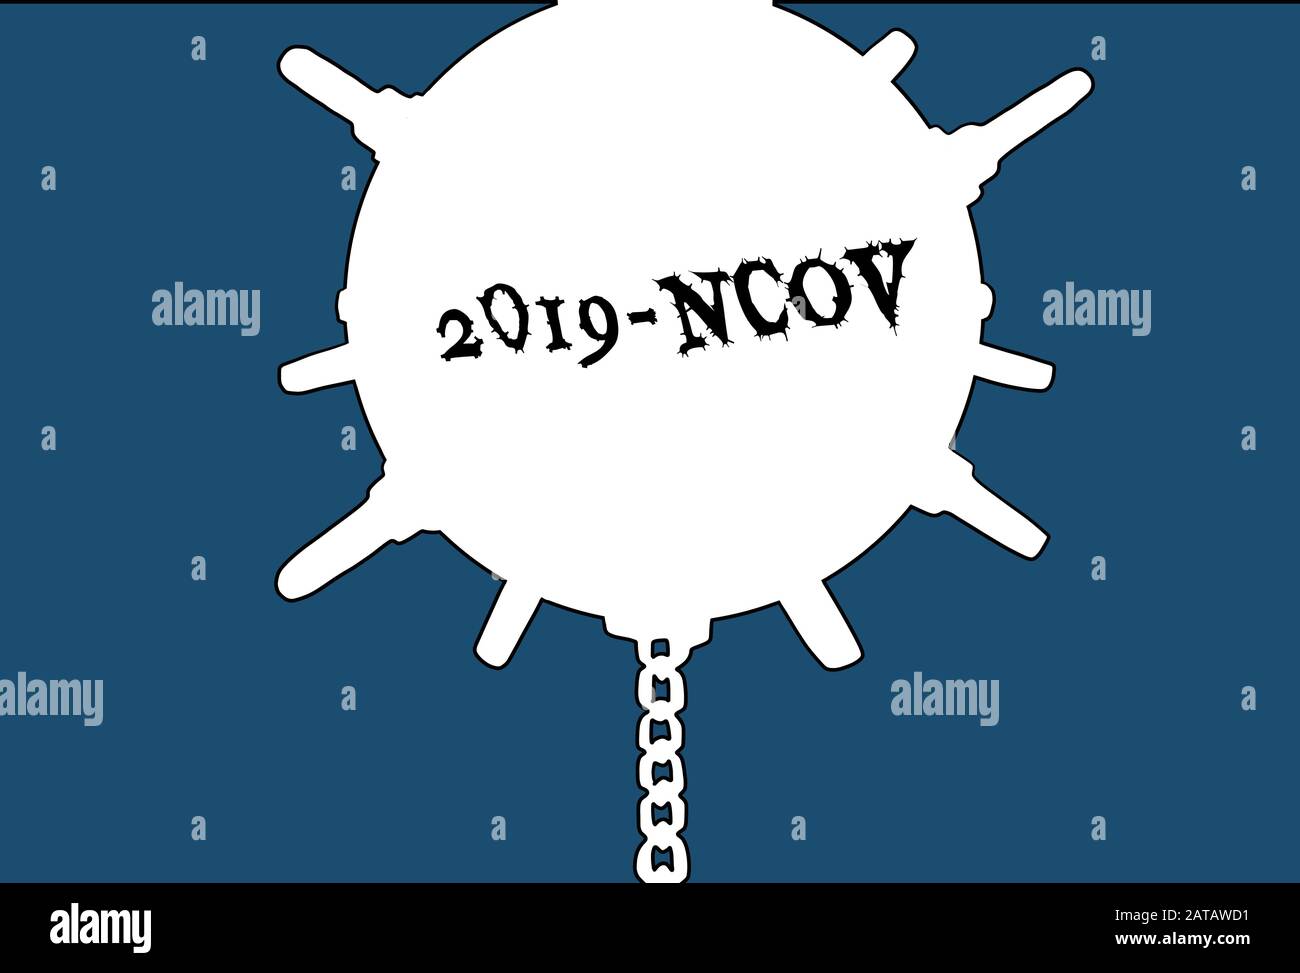 Virus como una mina naval. Nuevo Wuhan coronavirus 2019-nCoV brote epidémico Ilustración del Vector